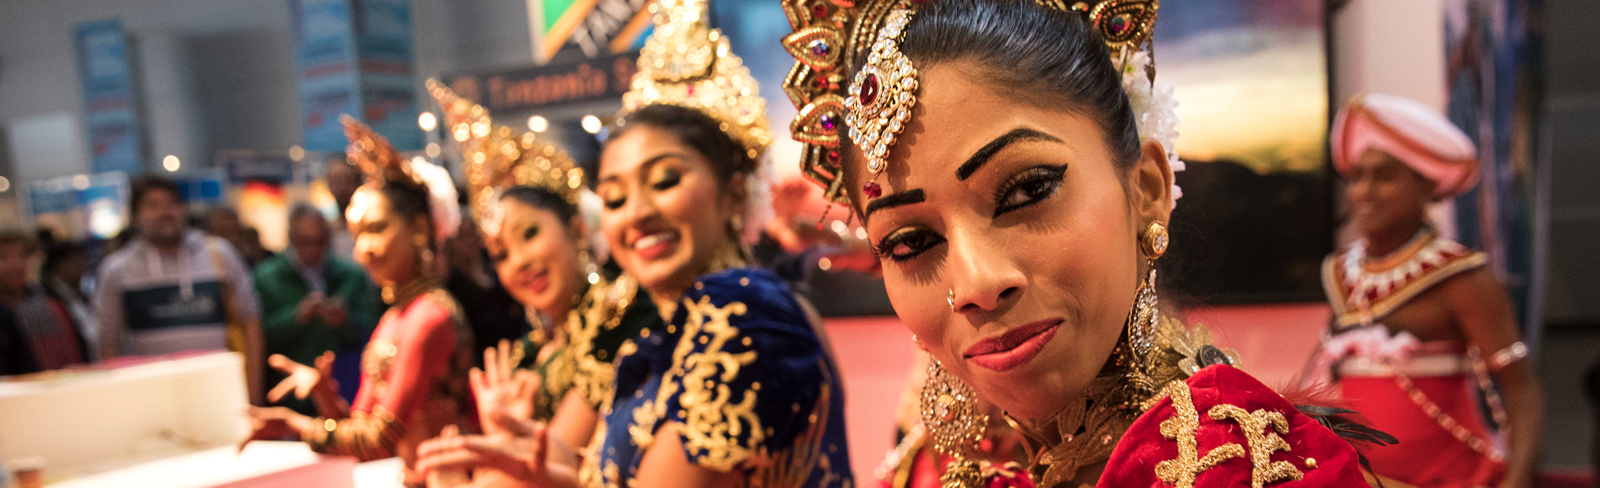 Tänzerinnen aus Sri Lanka